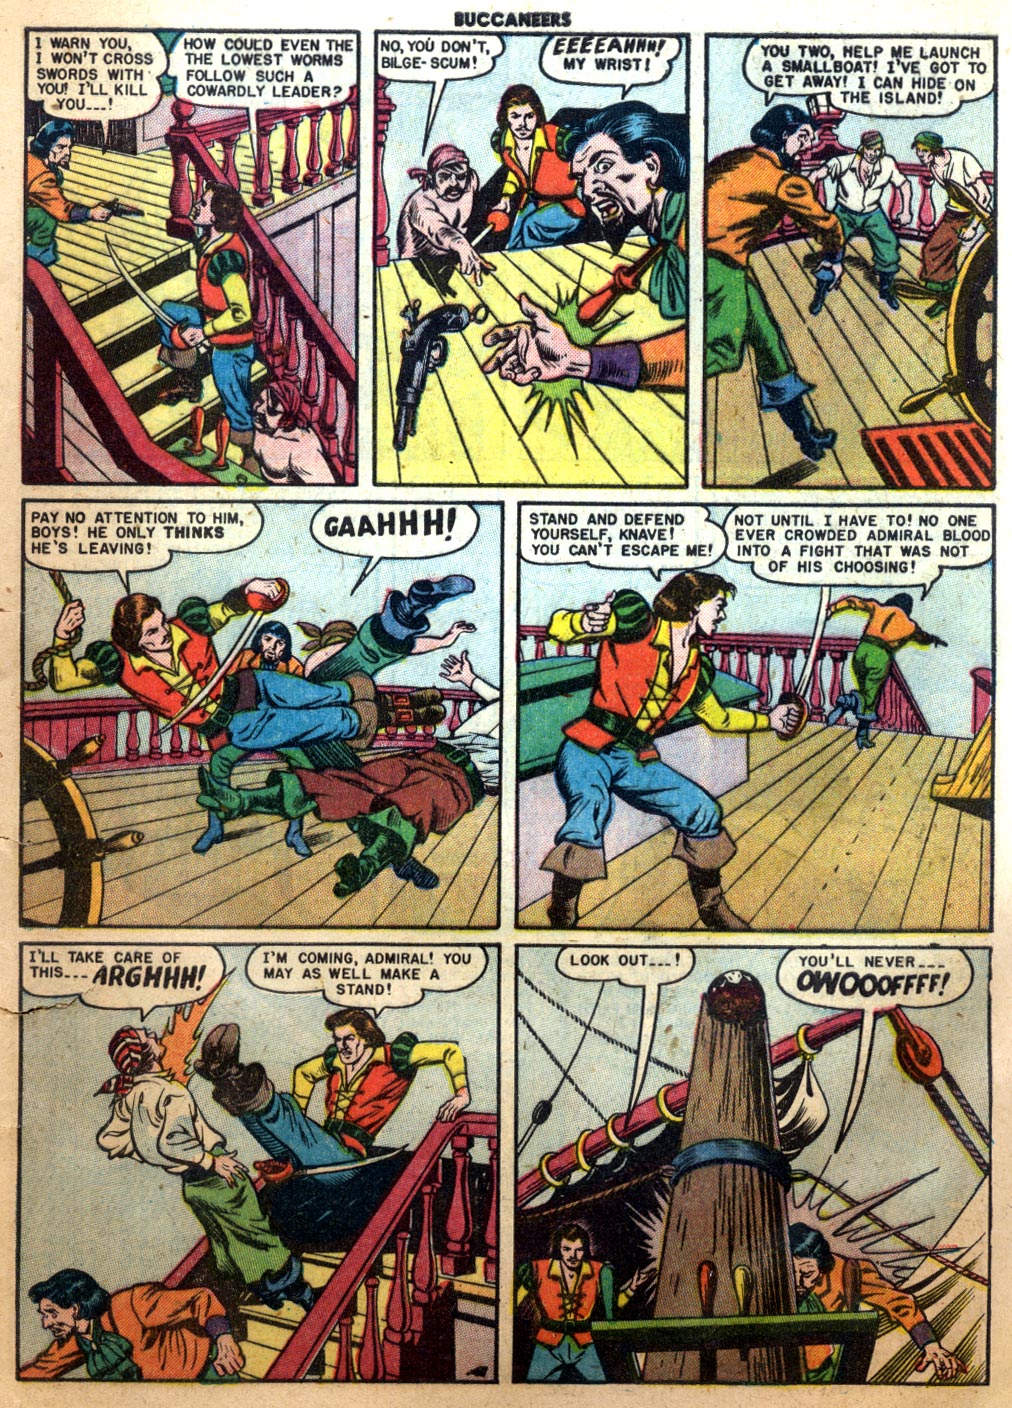 Read online Buccaneers comic -  Issue #26 - 13